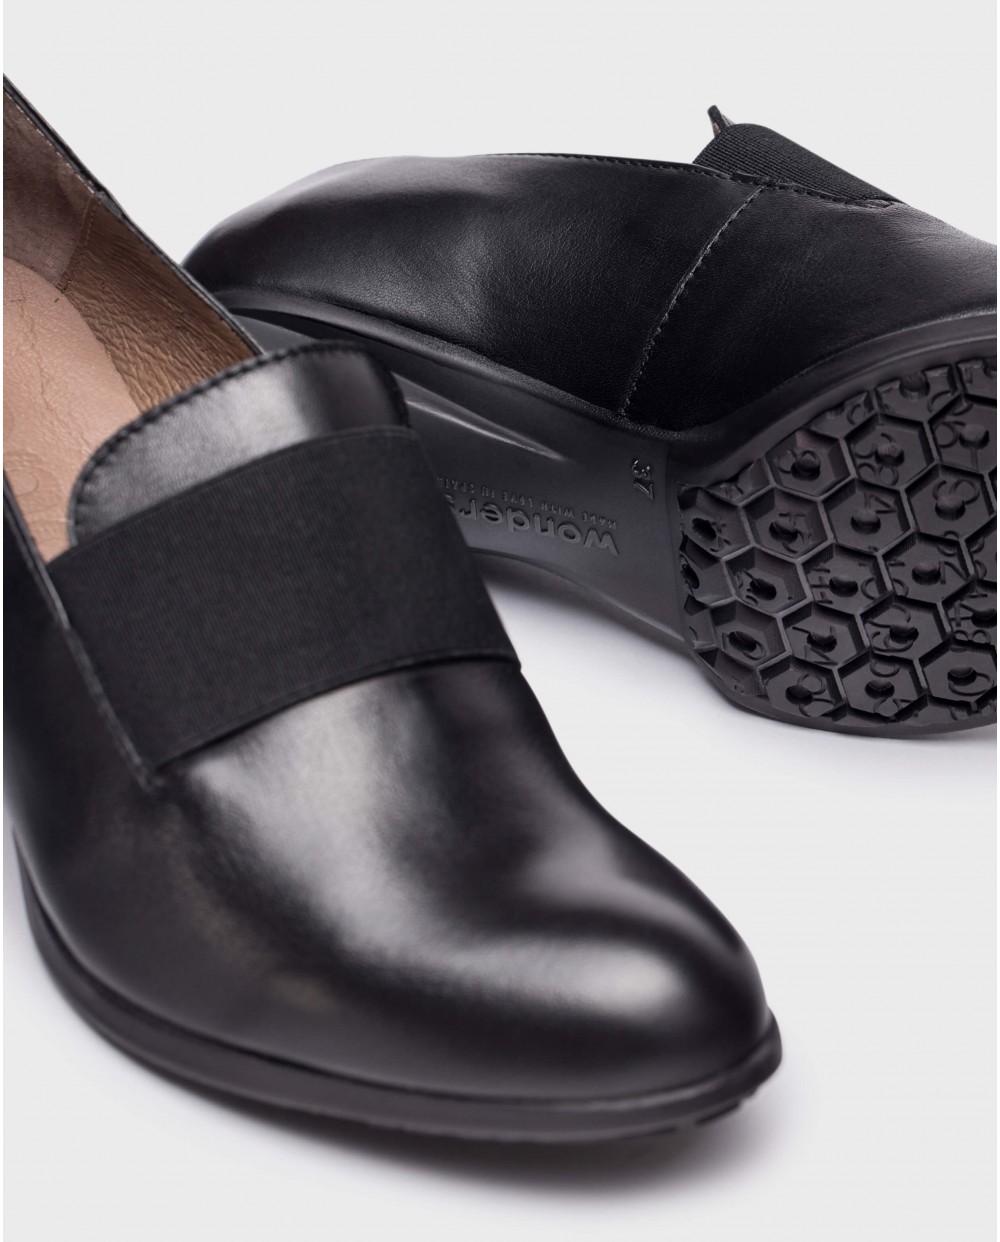 Black elastic shoes